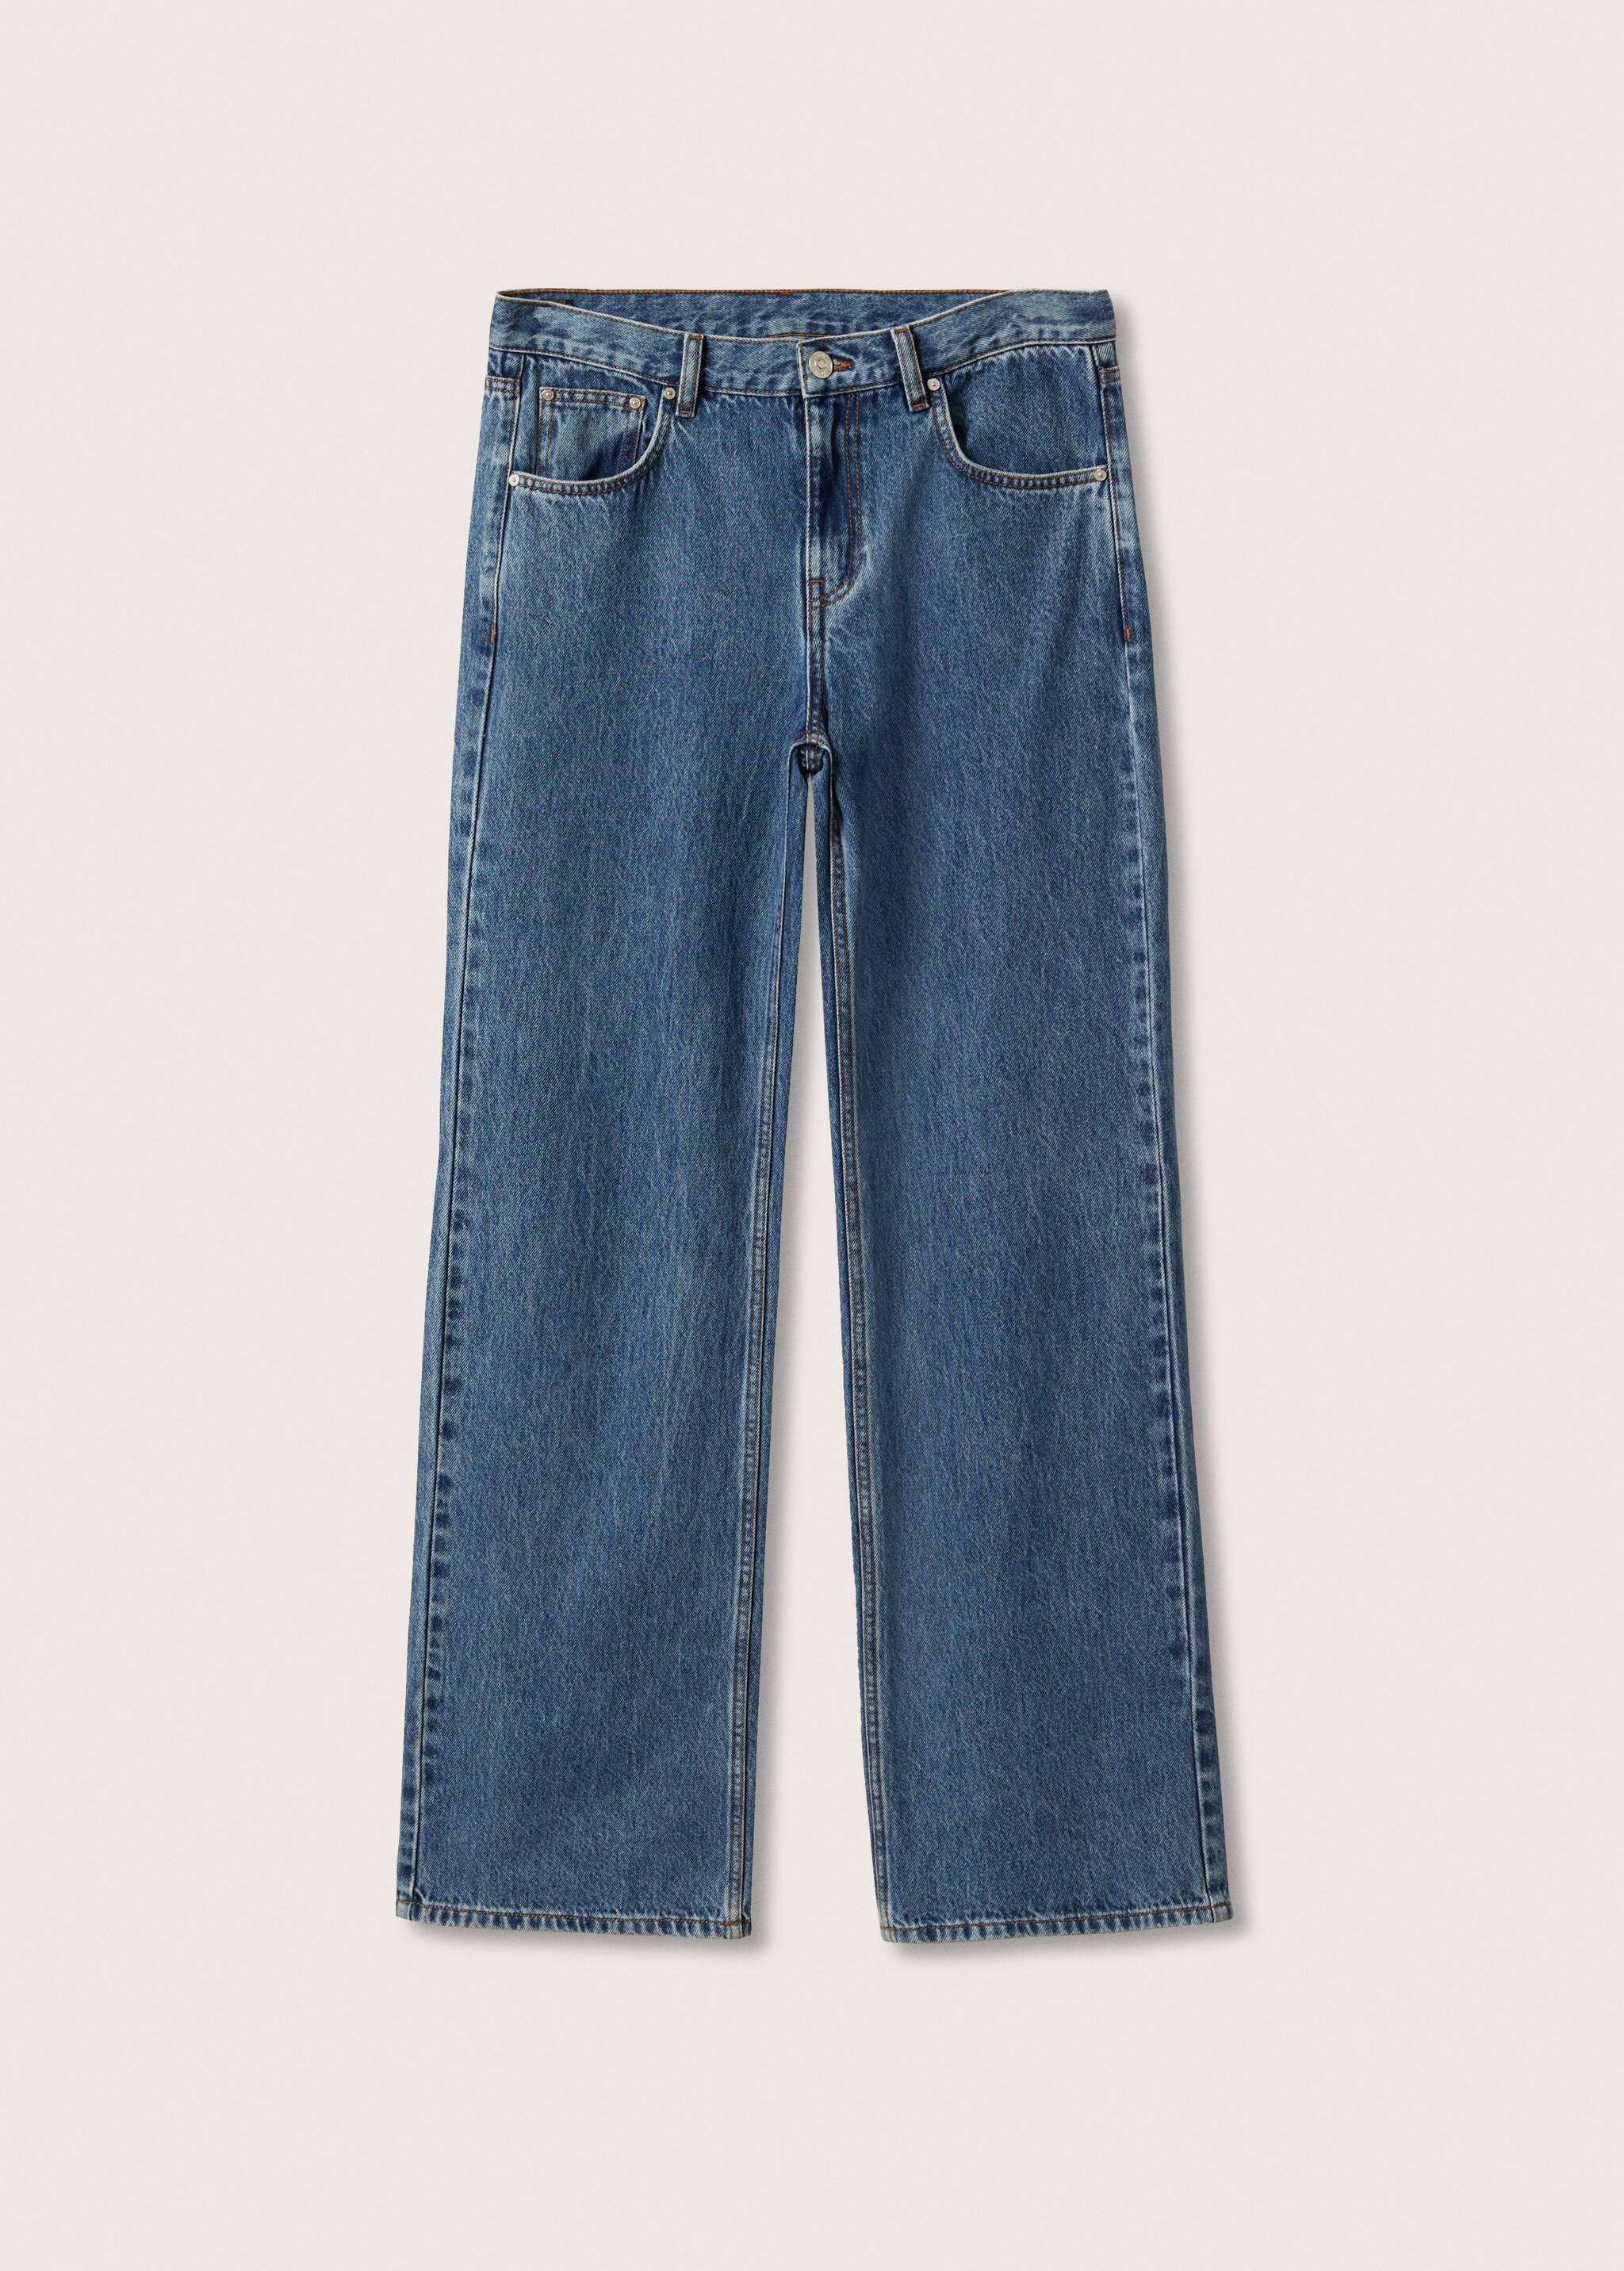 Jeans wideleg tiro bajo - Artículo sin modelo